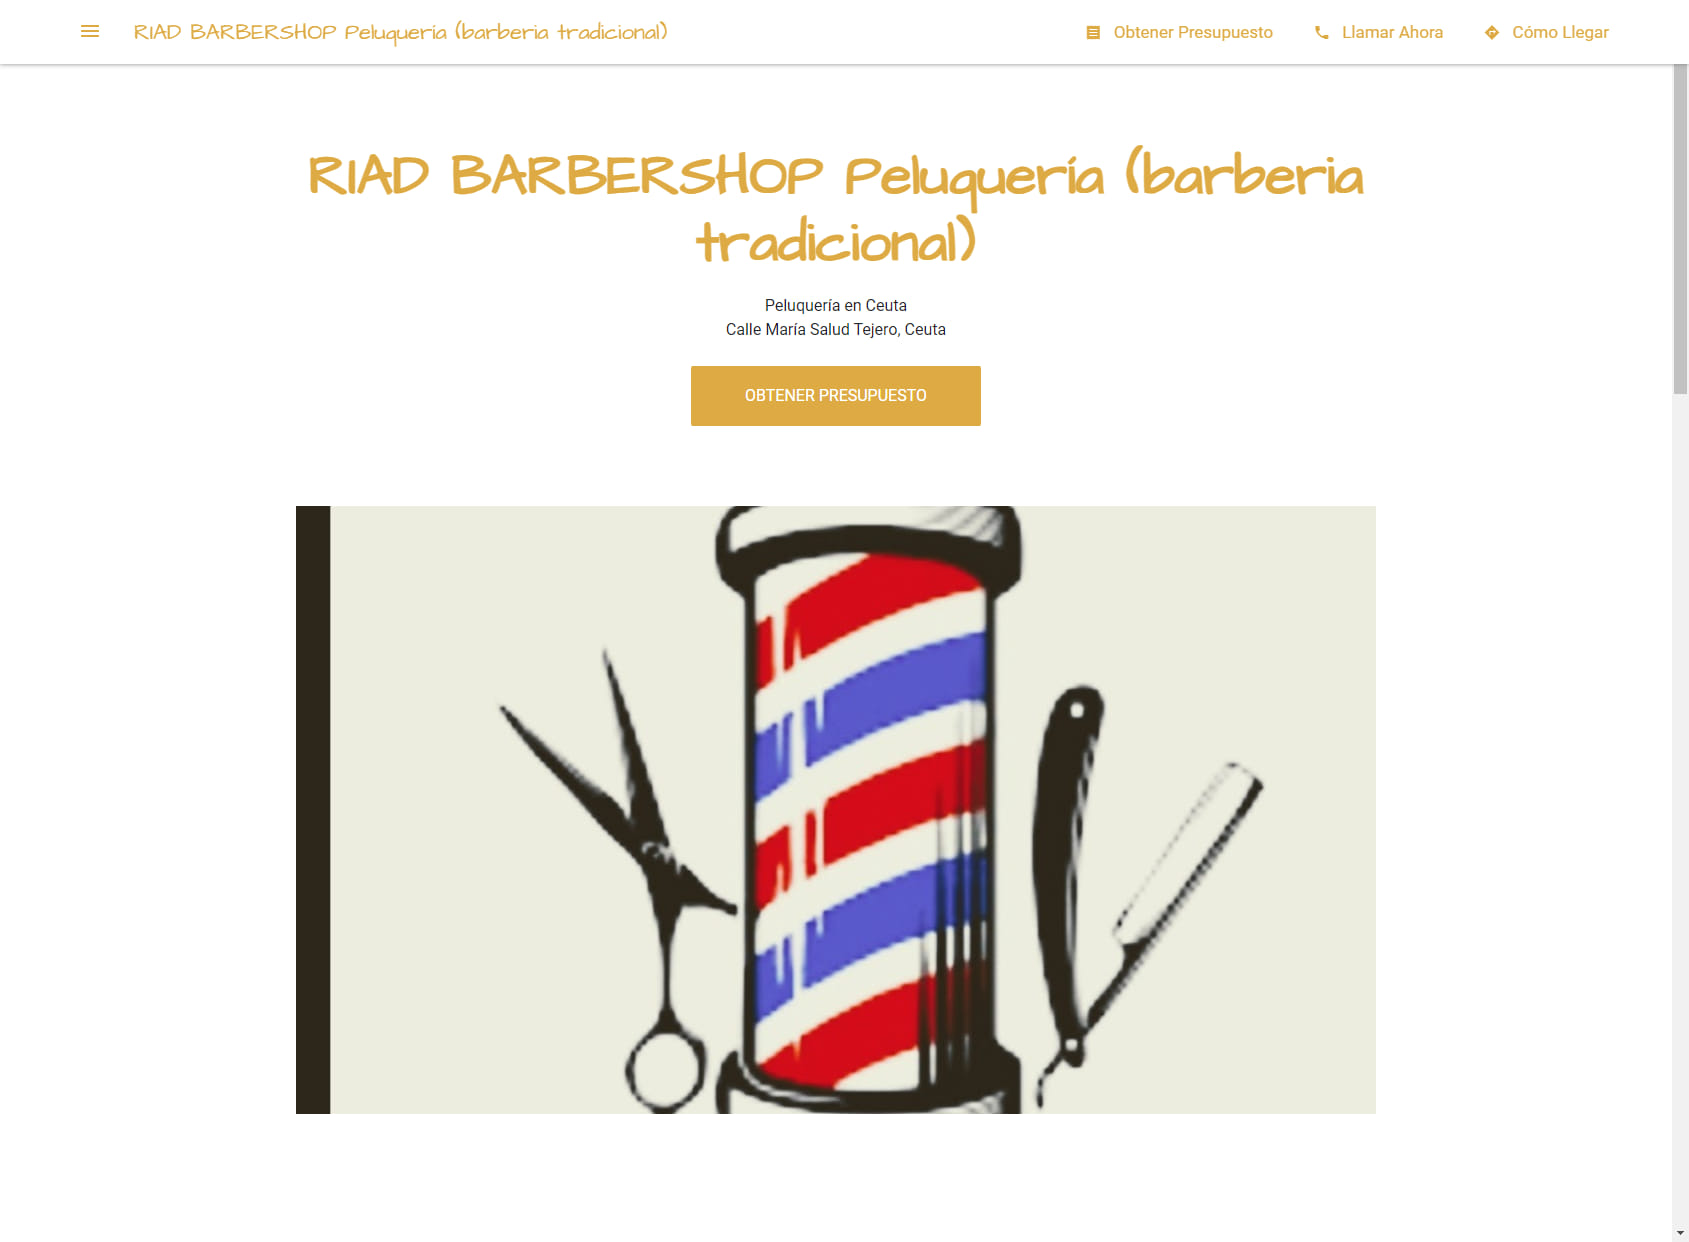 RIAD BARBERSHOP Peluquería (barberia tradicional)